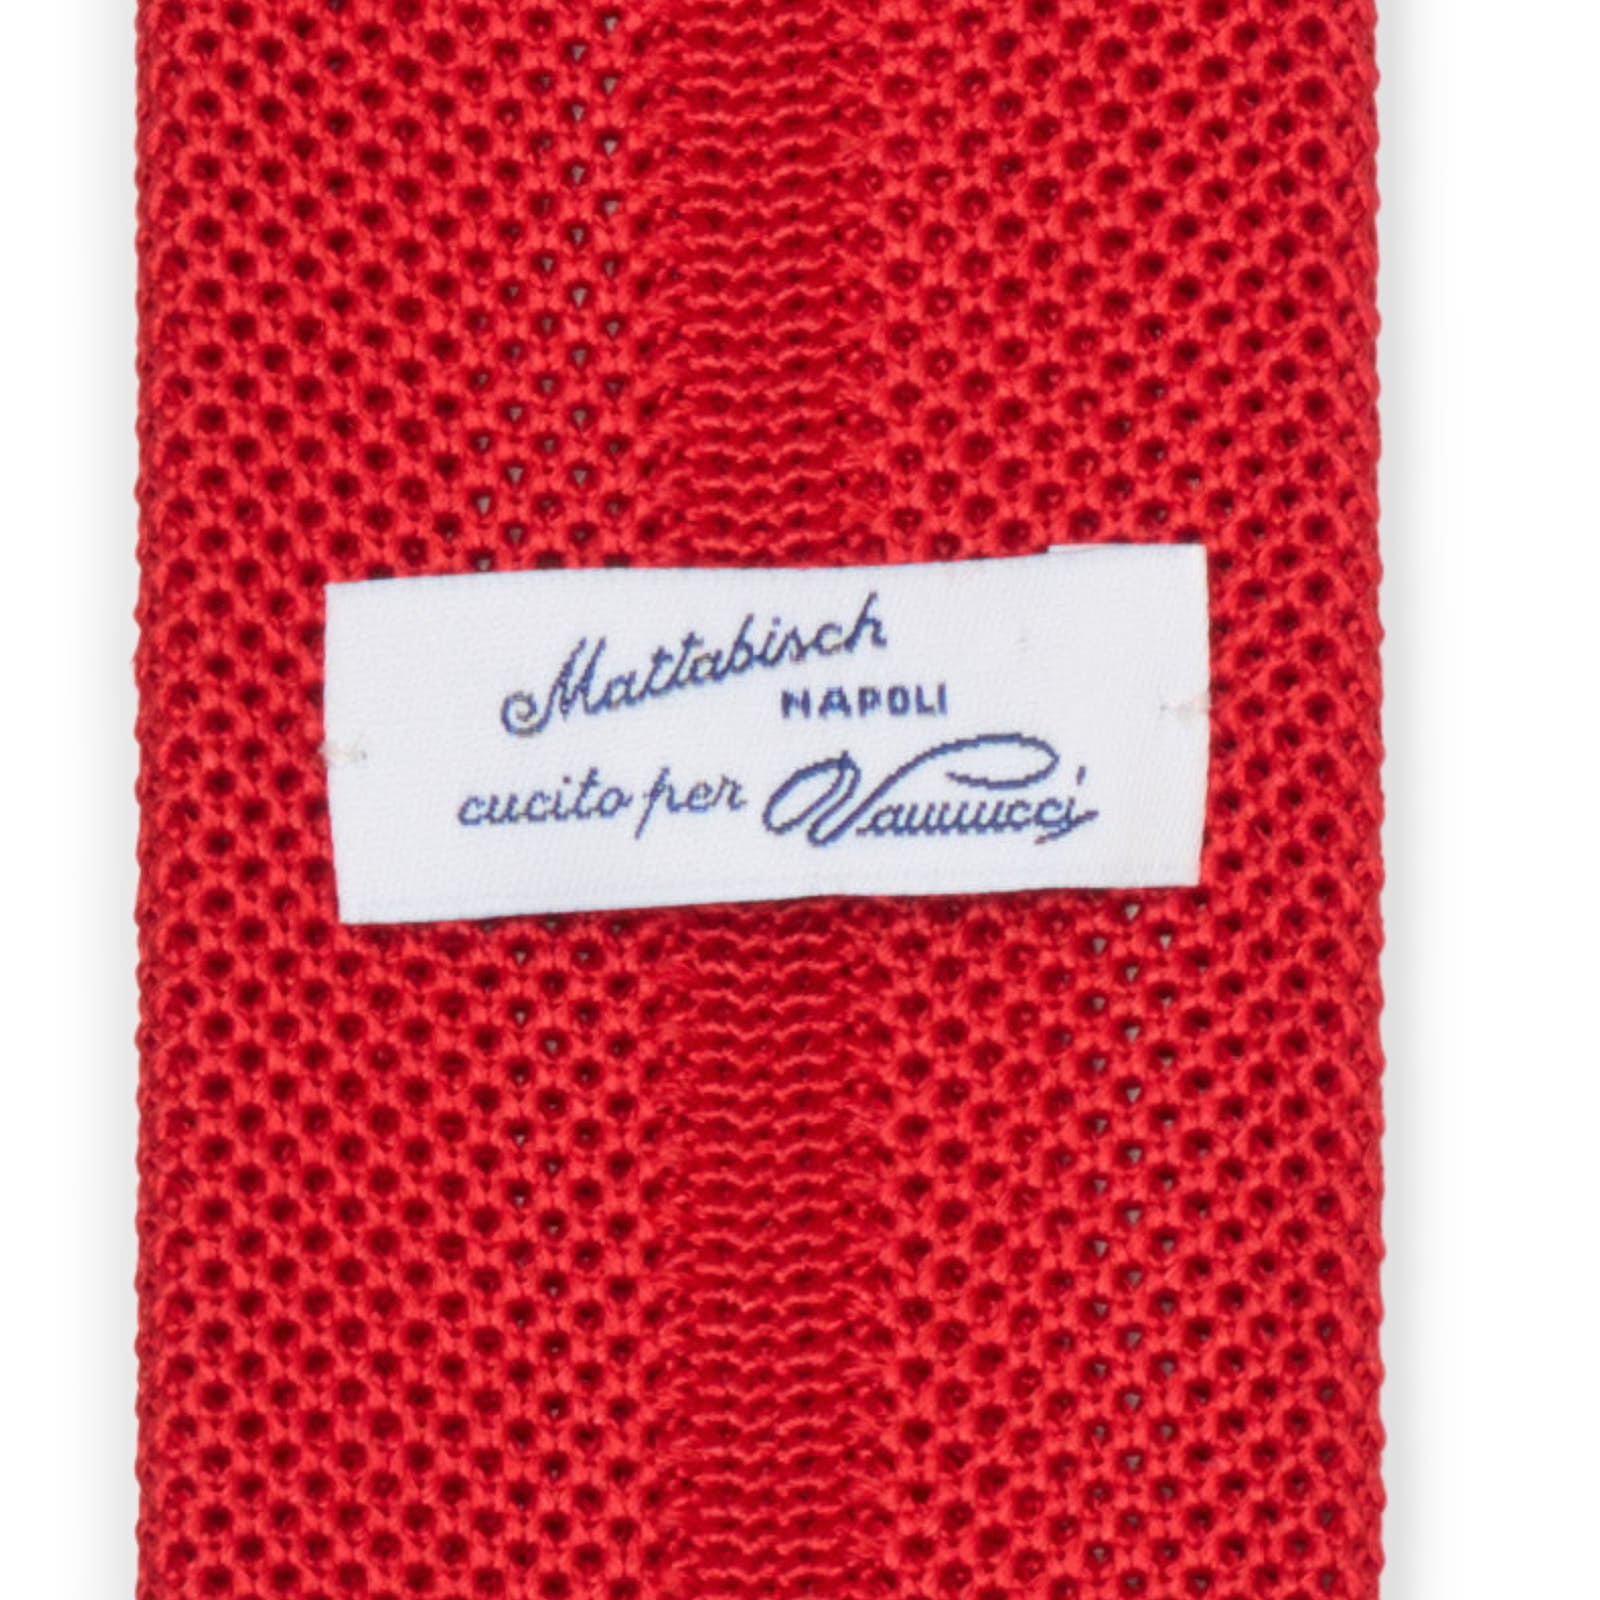 MATTABISCH FOR VANNUCCI Red Silk Knit Tie NEW